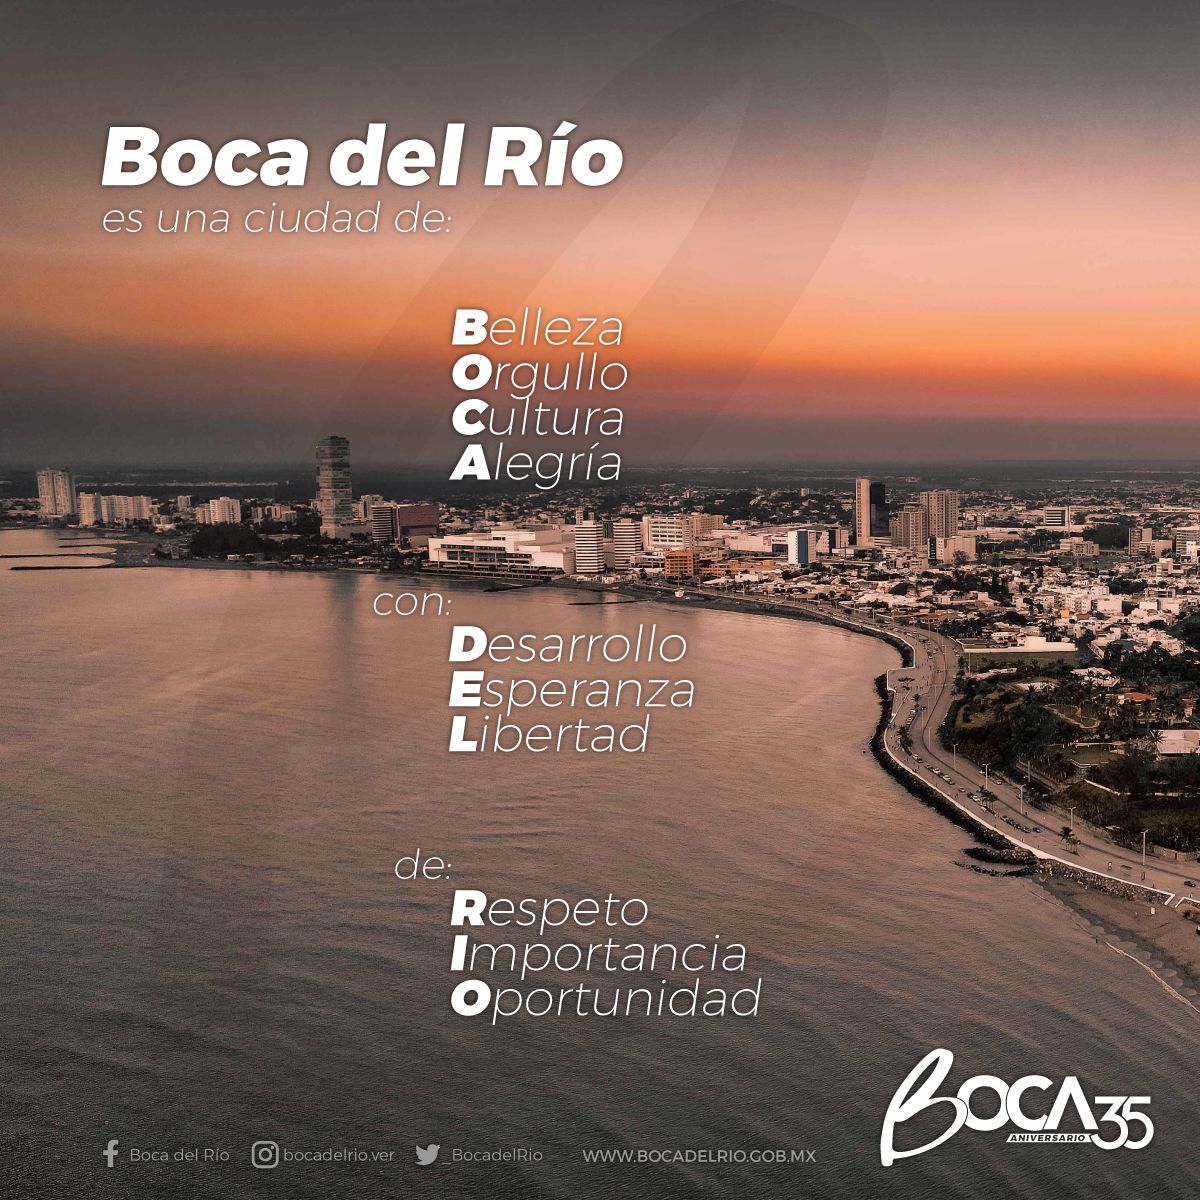 Sí, así es nuestro Boca del Río 🤩

¡Excelente viernes para todos! 🙌🏼

#Boca35Aniversario #LoMejordeVeracruz